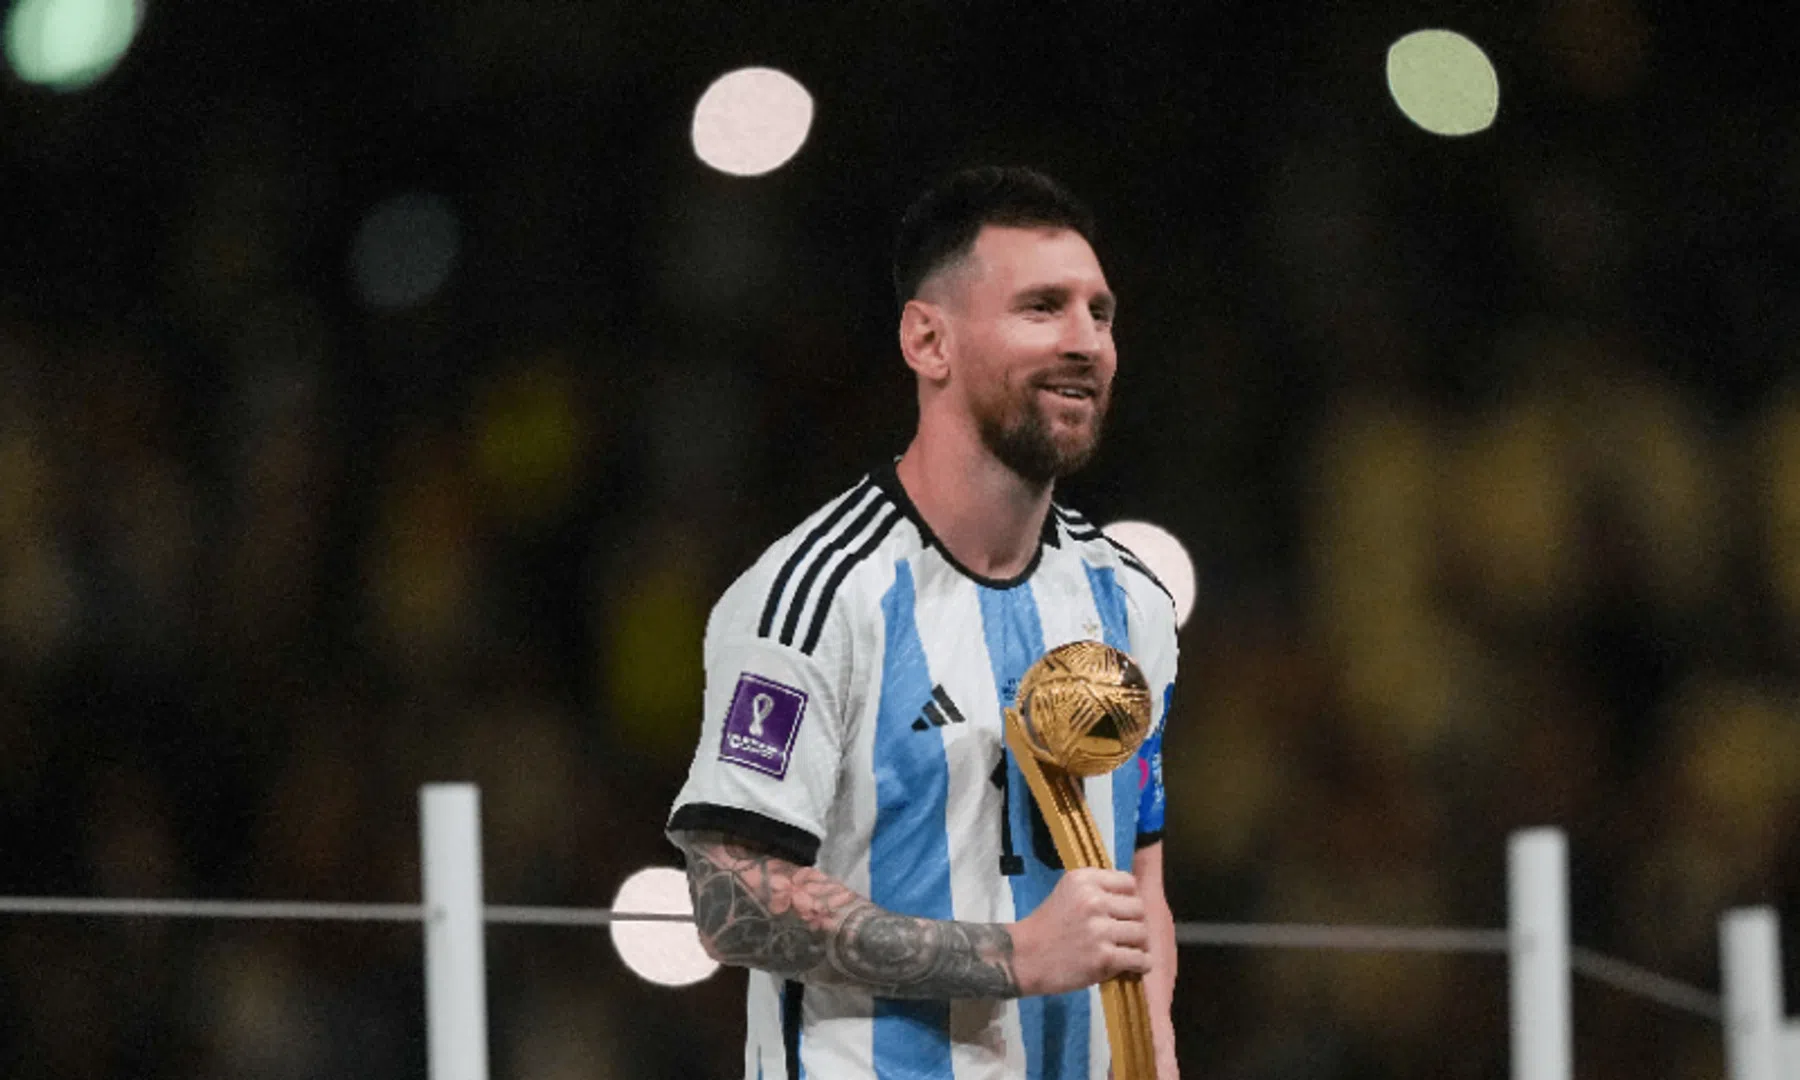 Meest gelikete Instagram-post ooit komt van Lionel Messi